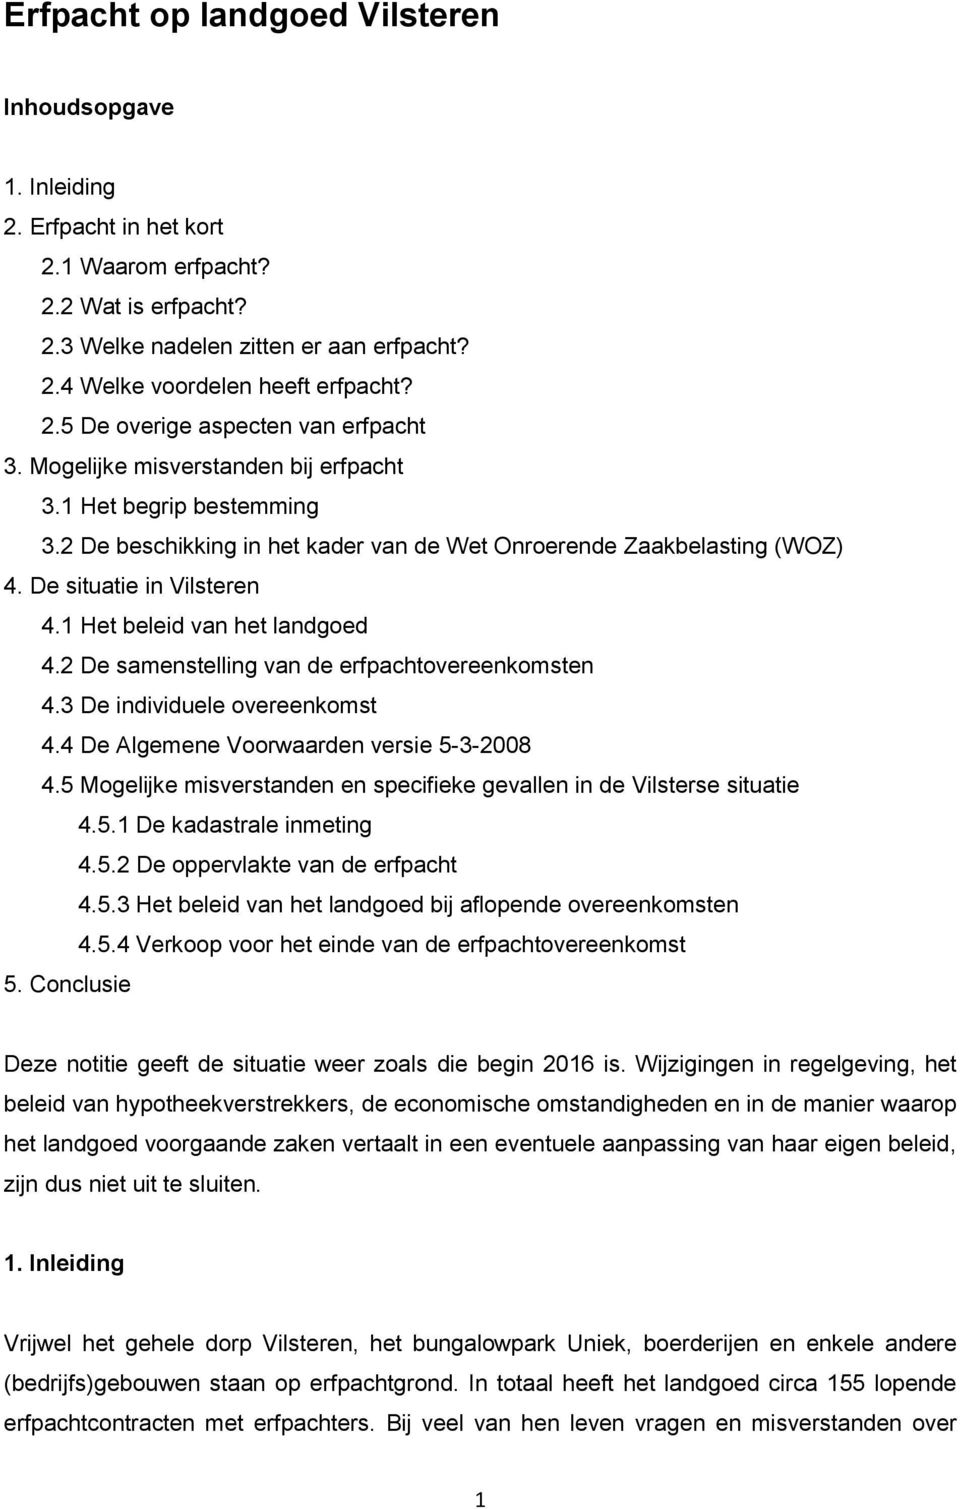 De situatie in Vilsteren 4.1 Het beleid van het landgoed 4.2 De samenstelling van de erfpachtovereenkomsten 4.3 De individuele overeenkomst 4.4 De Algemene Voorwaarden versie 5-3-2008 4.